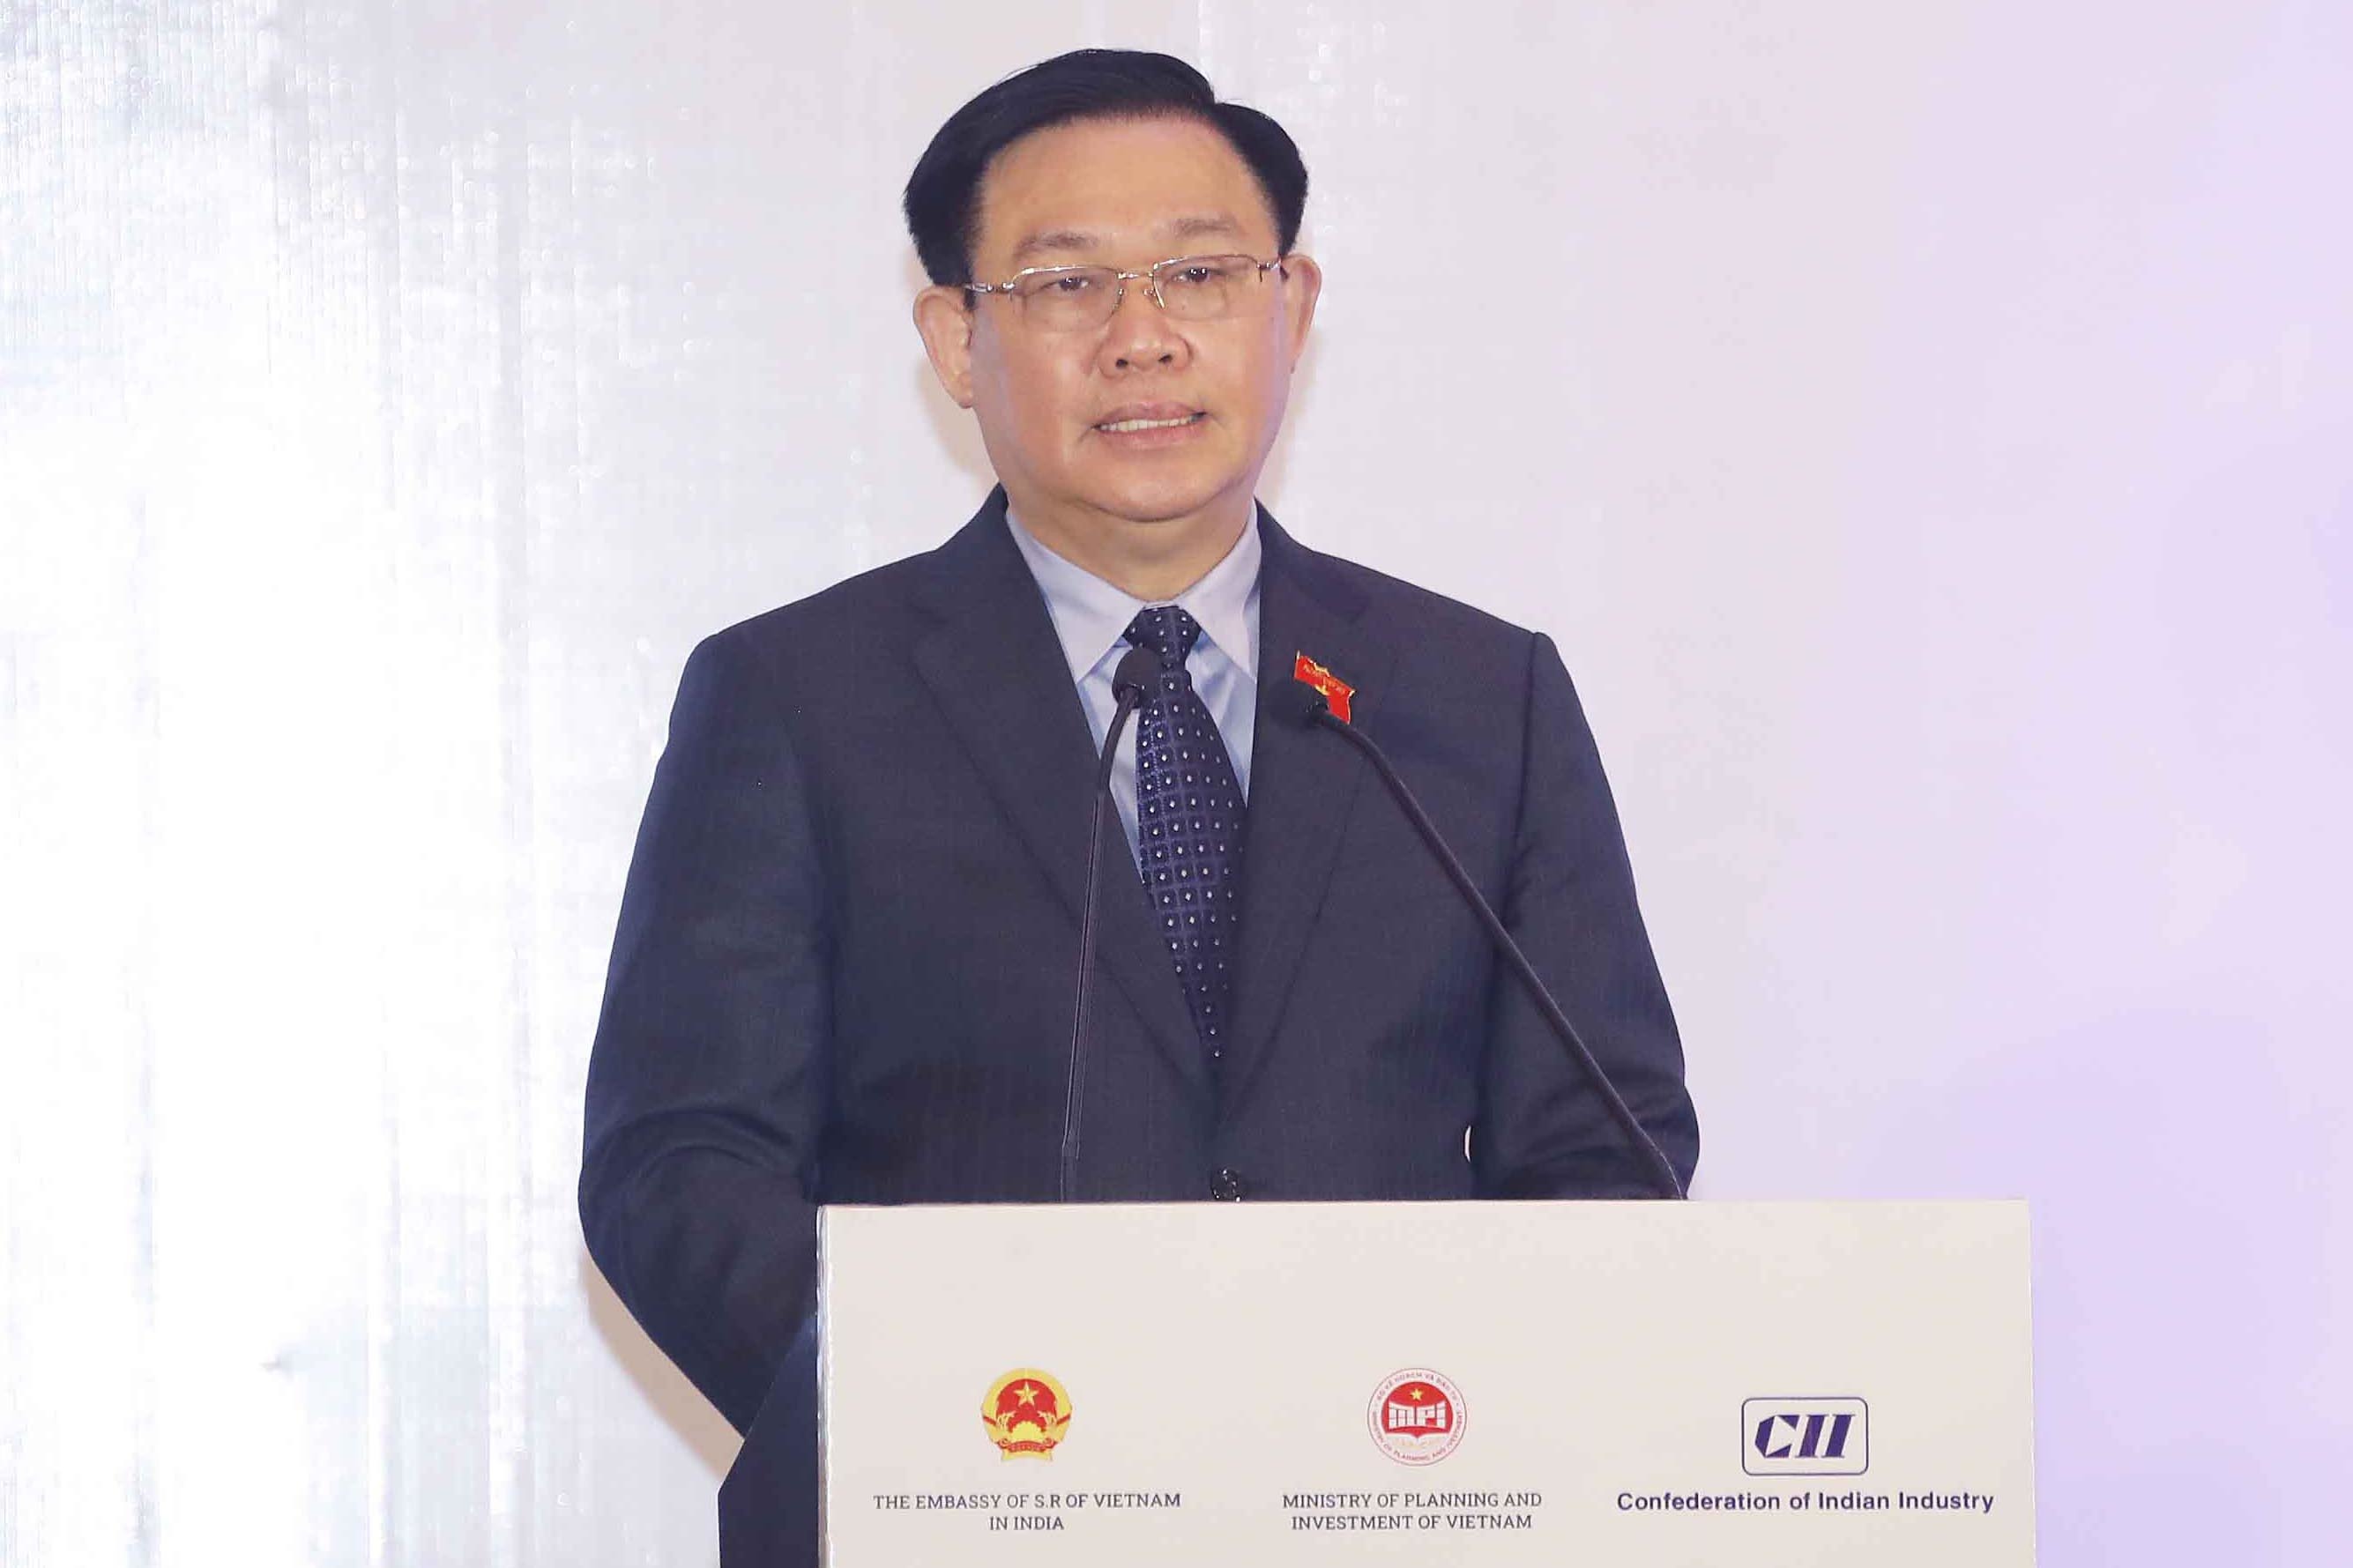 Chủ tịch Quốc hội: Hợp tác giữa Việt Nam-Ấn Độ còn rất nhiều dư địa phát triển